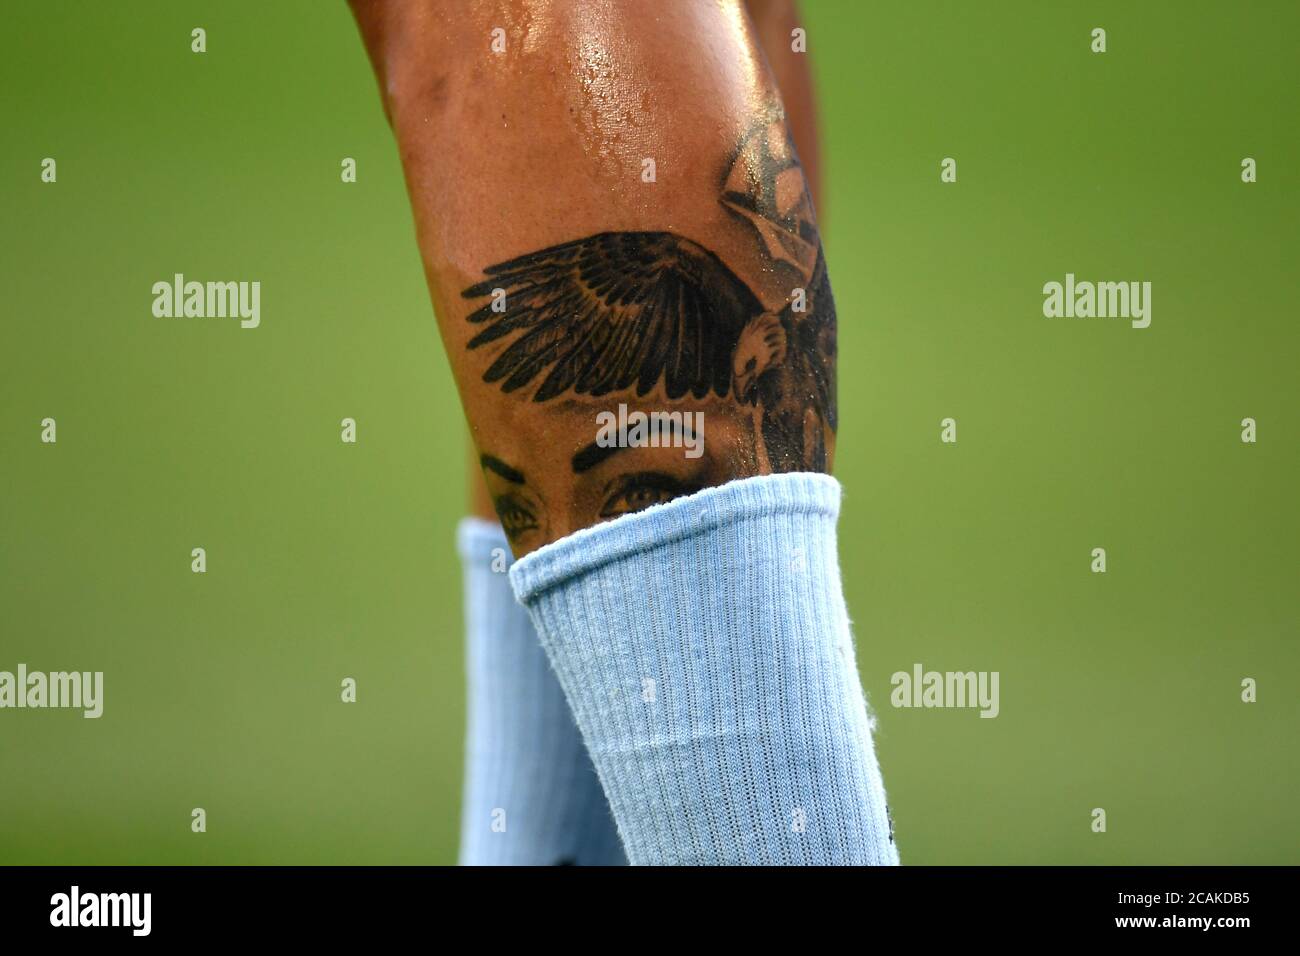 Tattoo match immagini e fotografie stock ad alta risoluzione - Alamy